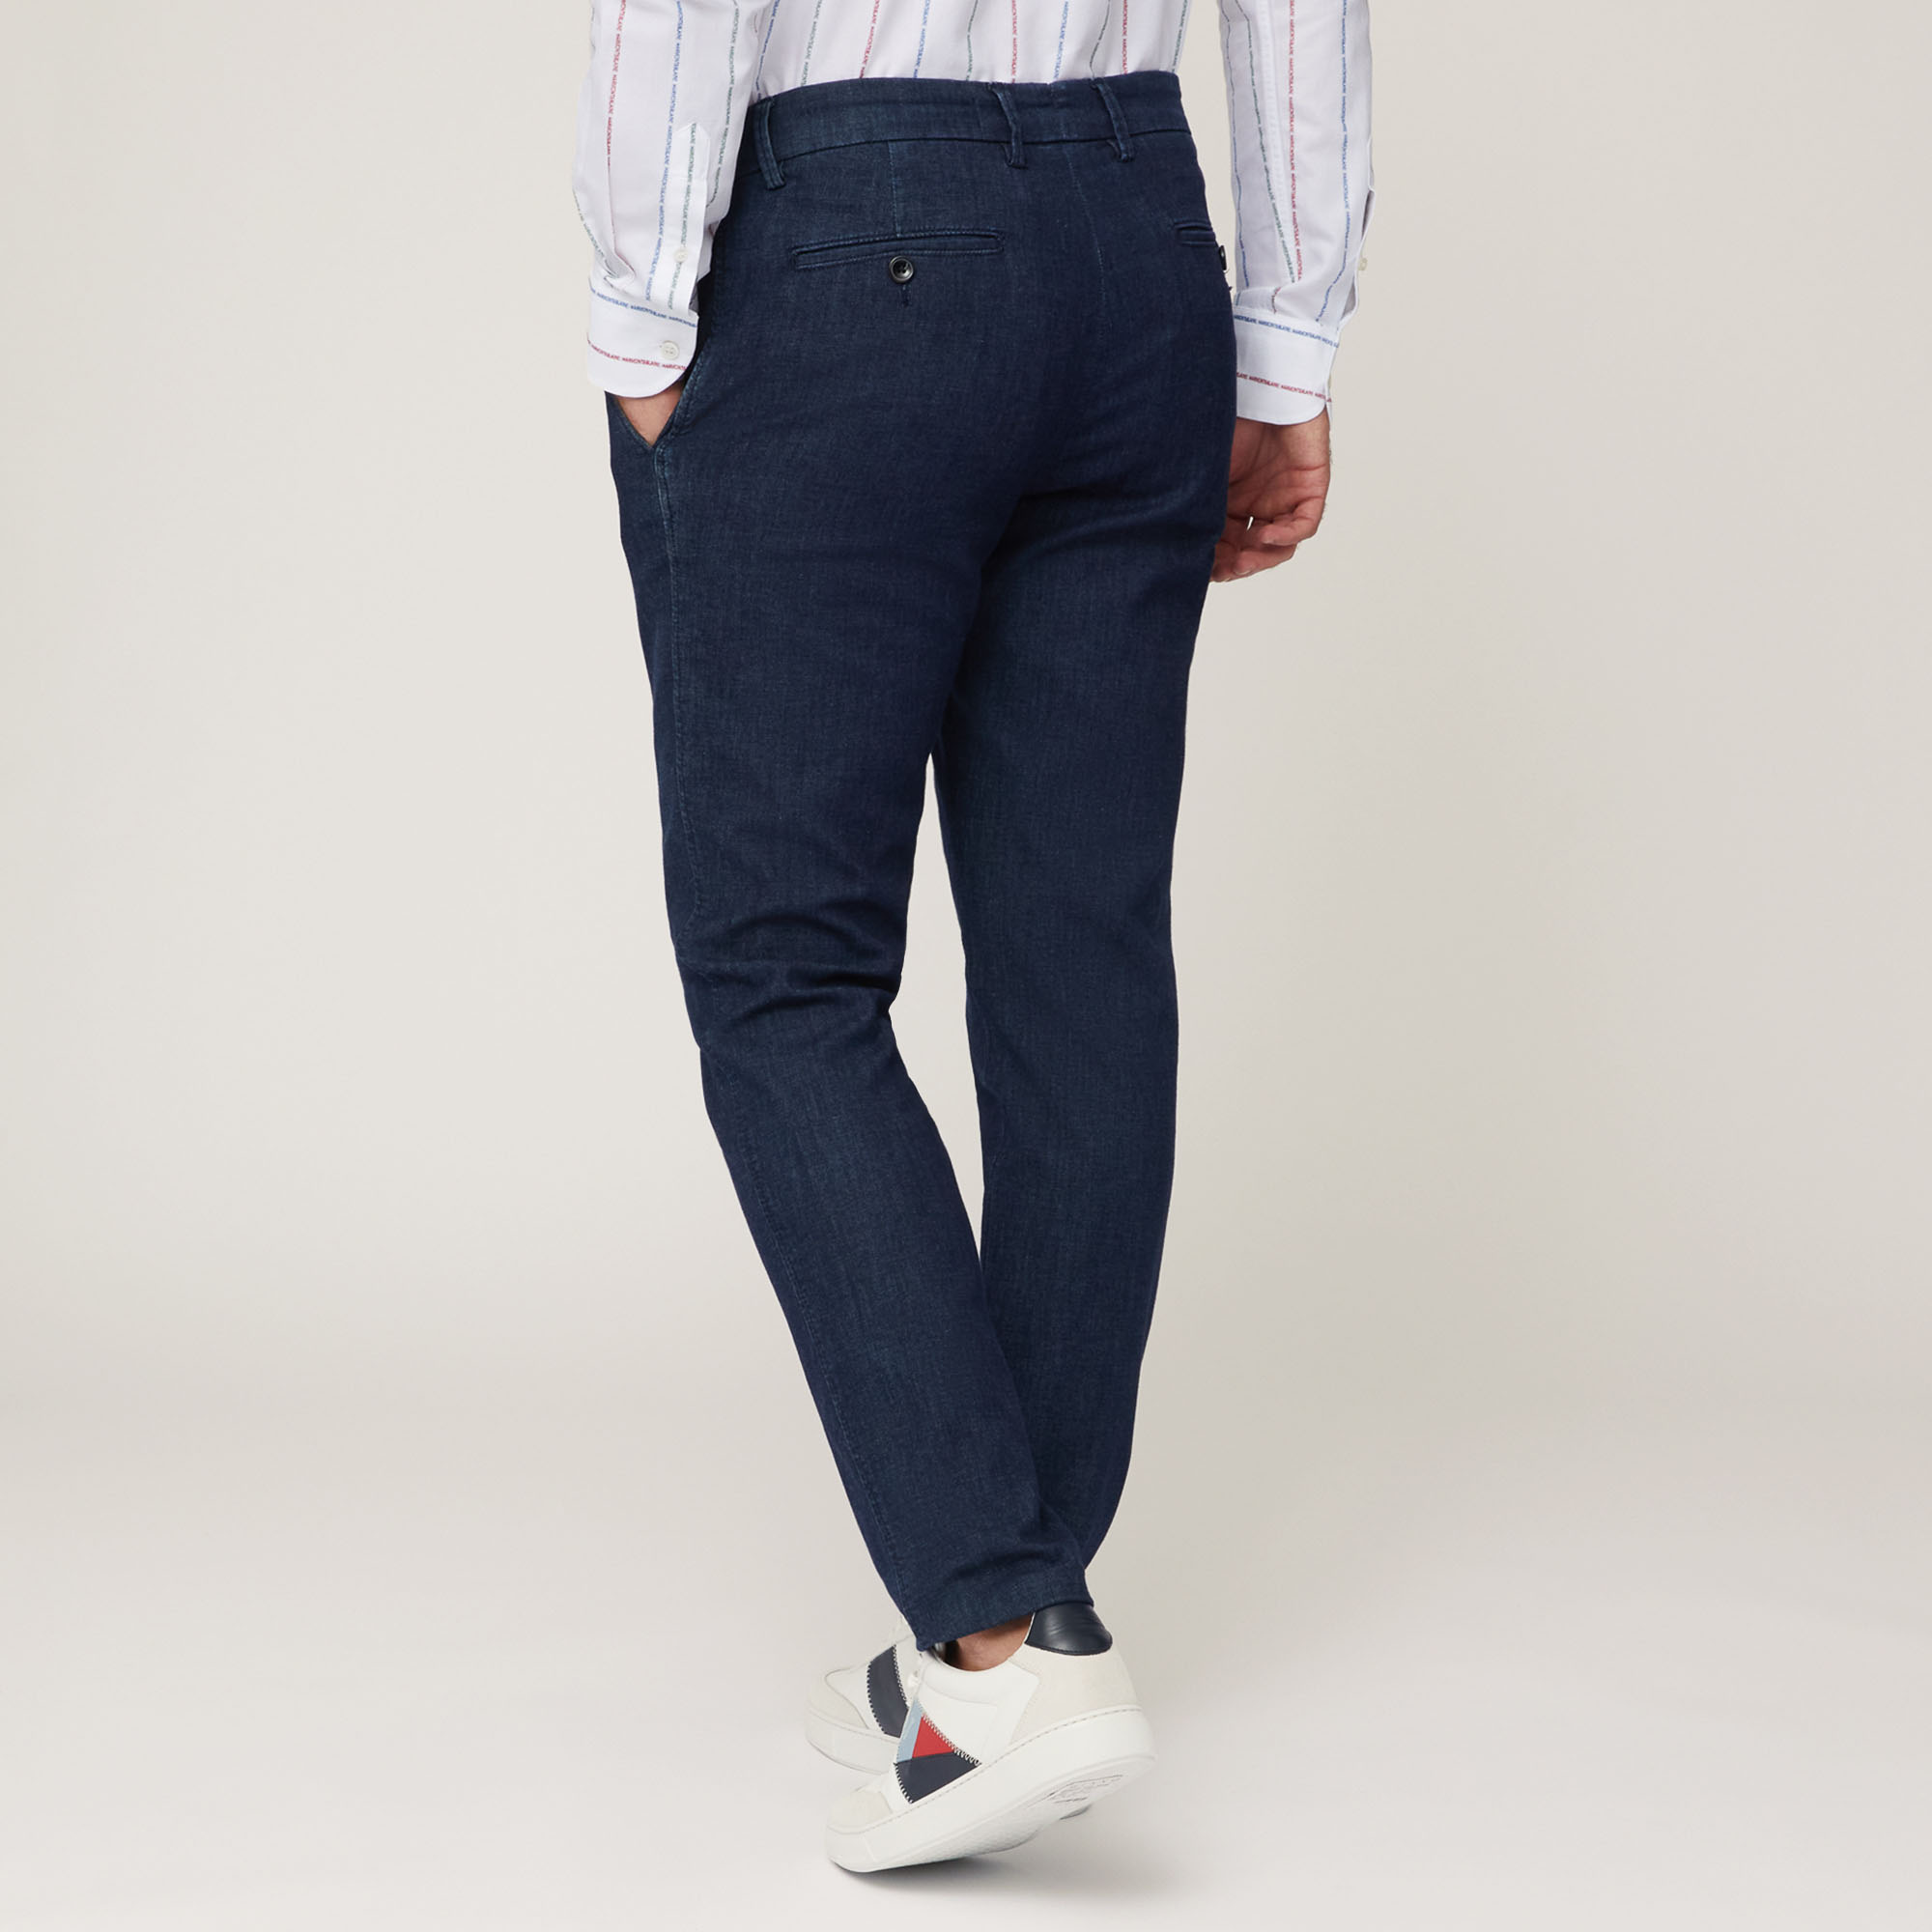 Pantaloni Chino Narrow Fit, Blu Denim, large image number 1